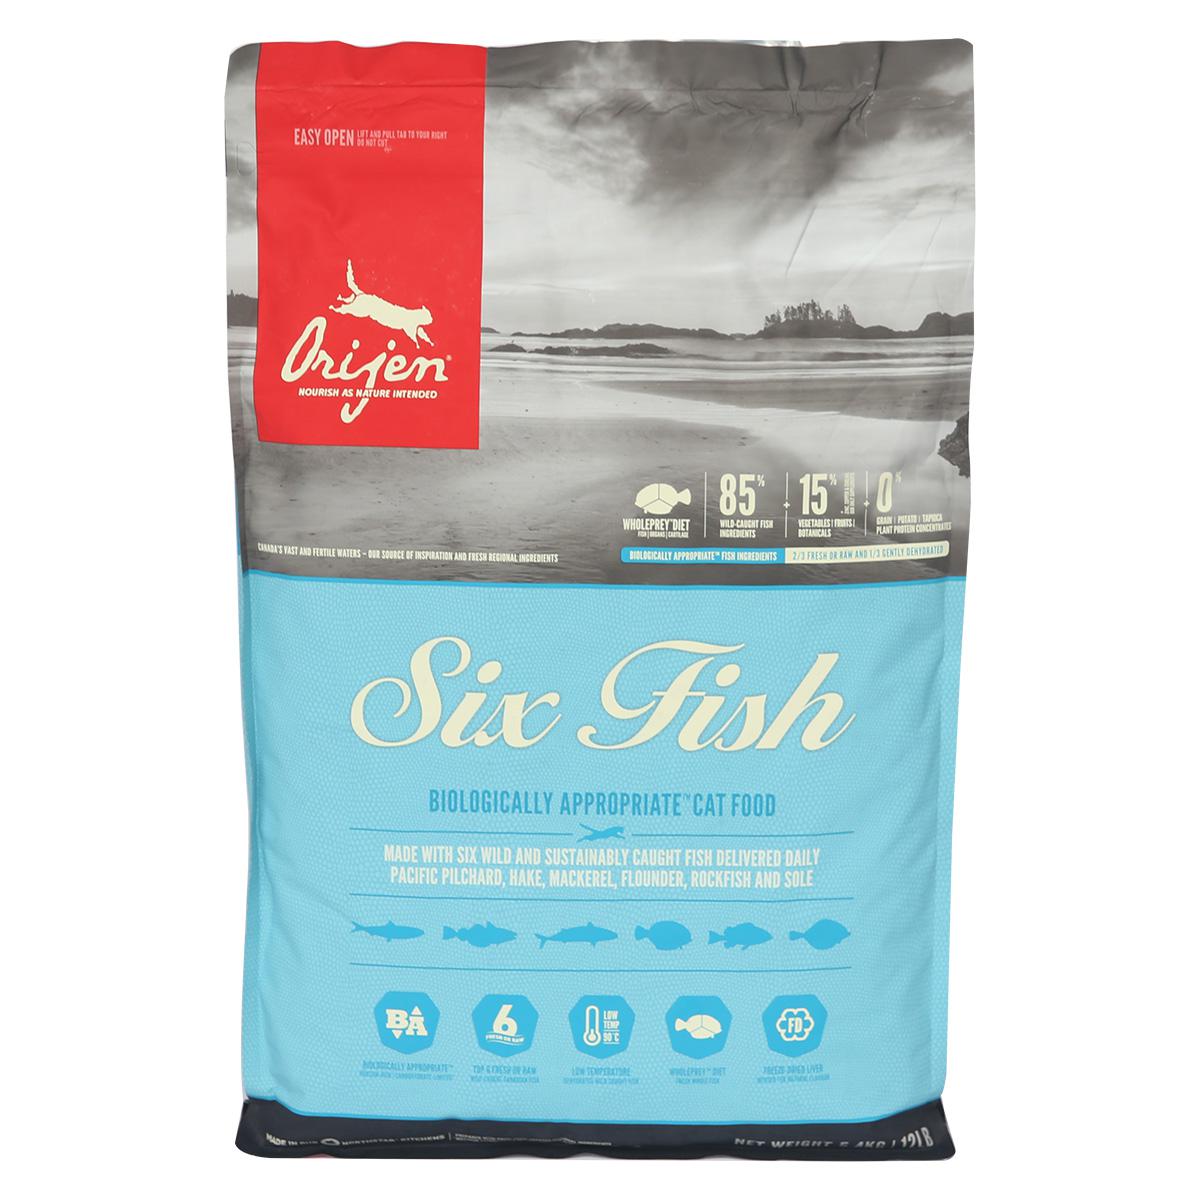 orijen 渴望 六种鲜鱼海藻配方全猫粮 5.4kg